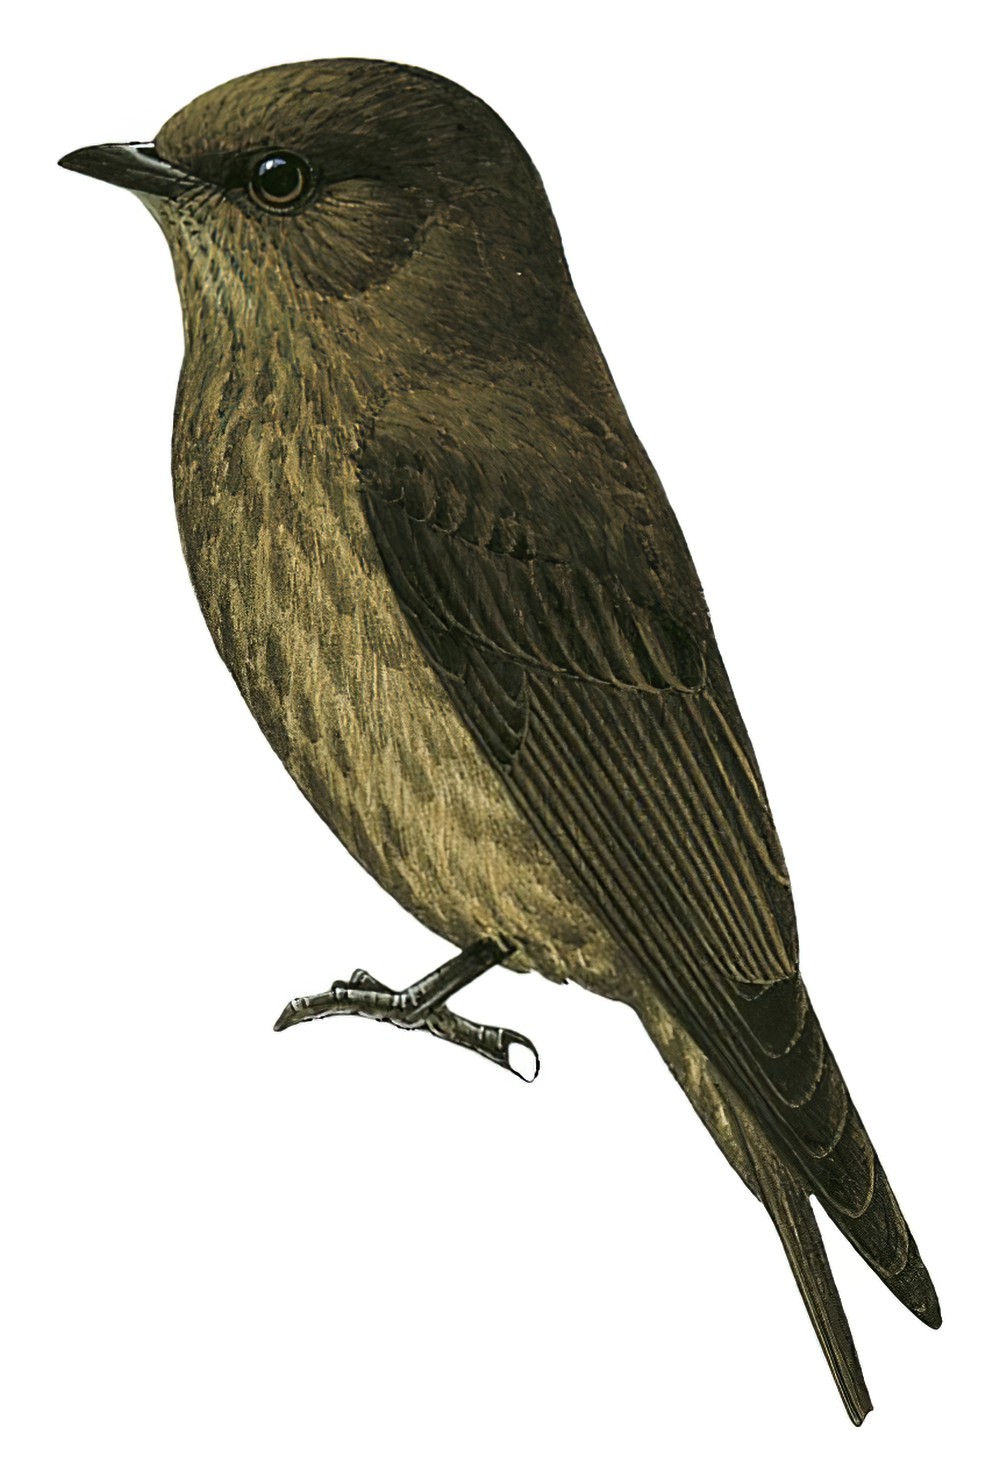 Sooty Flycatcher / Bradornis fuliginosus